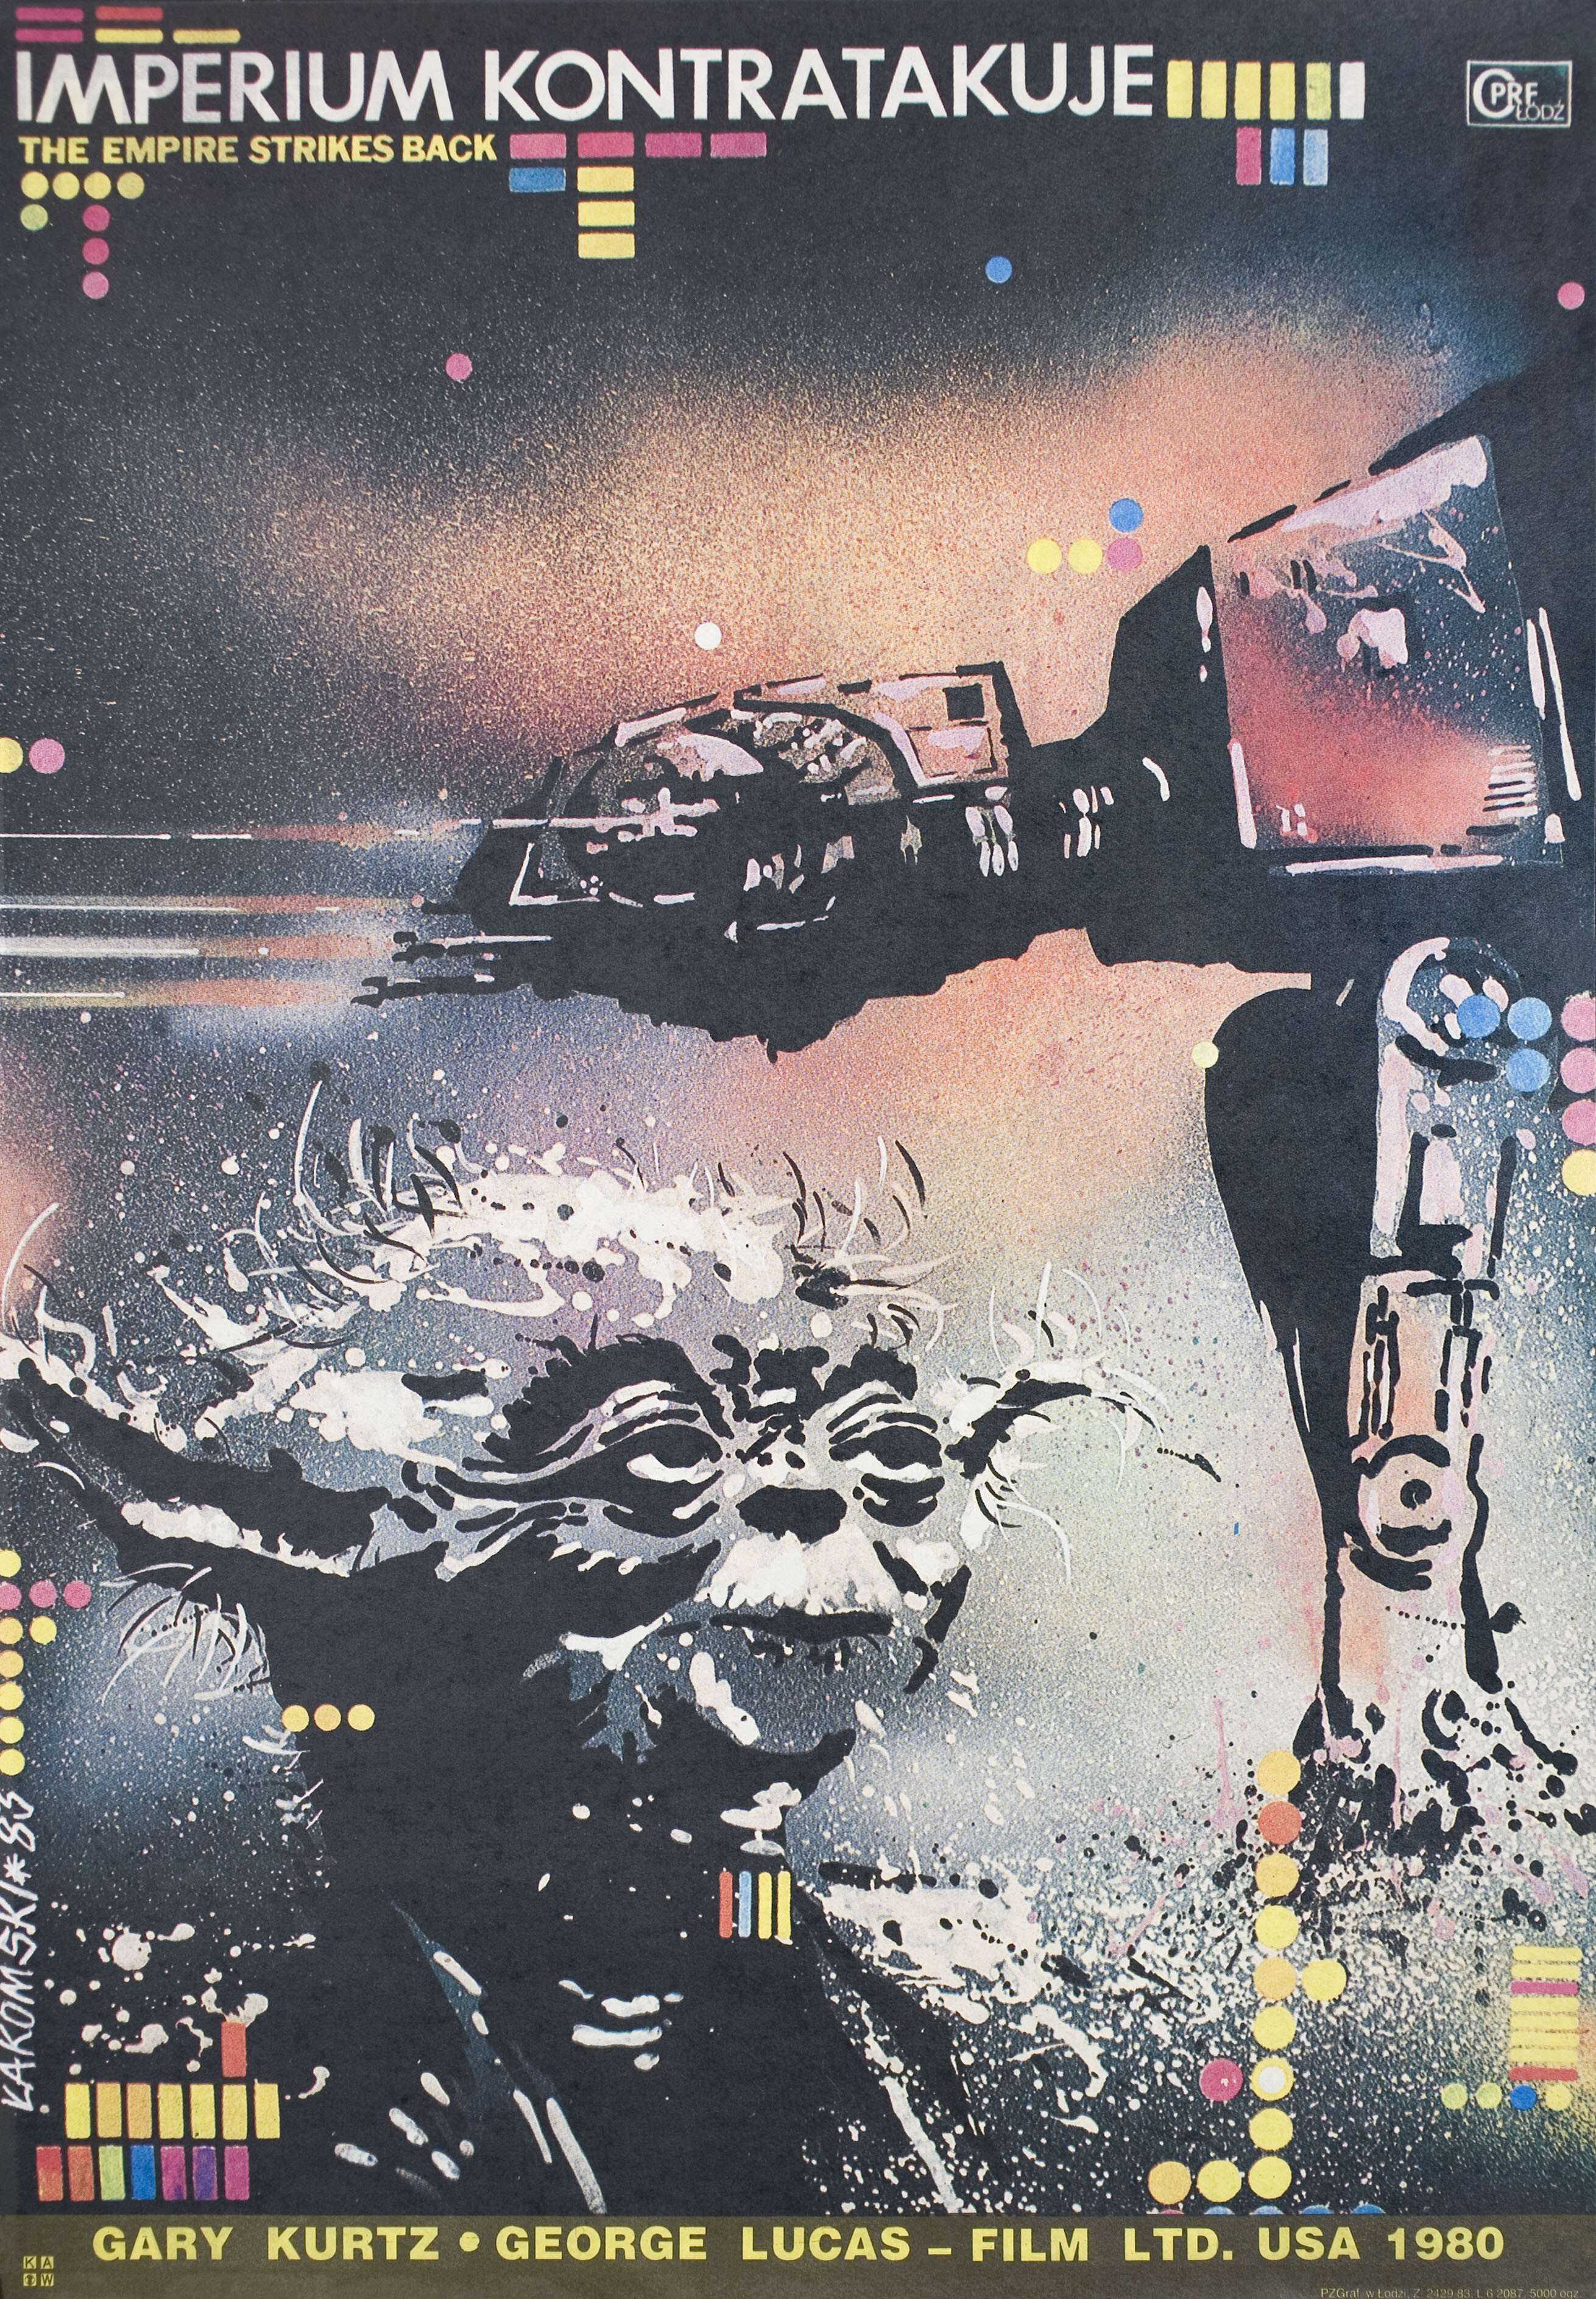 Звёздные войны: Эпизод 5 – Империя наносит ответный удар (The Empire Strikes Back, 1980), режиссёр Ирвин Кершнер, польский плакат к фильму, 1983 год, автор Мирослав Лакомский